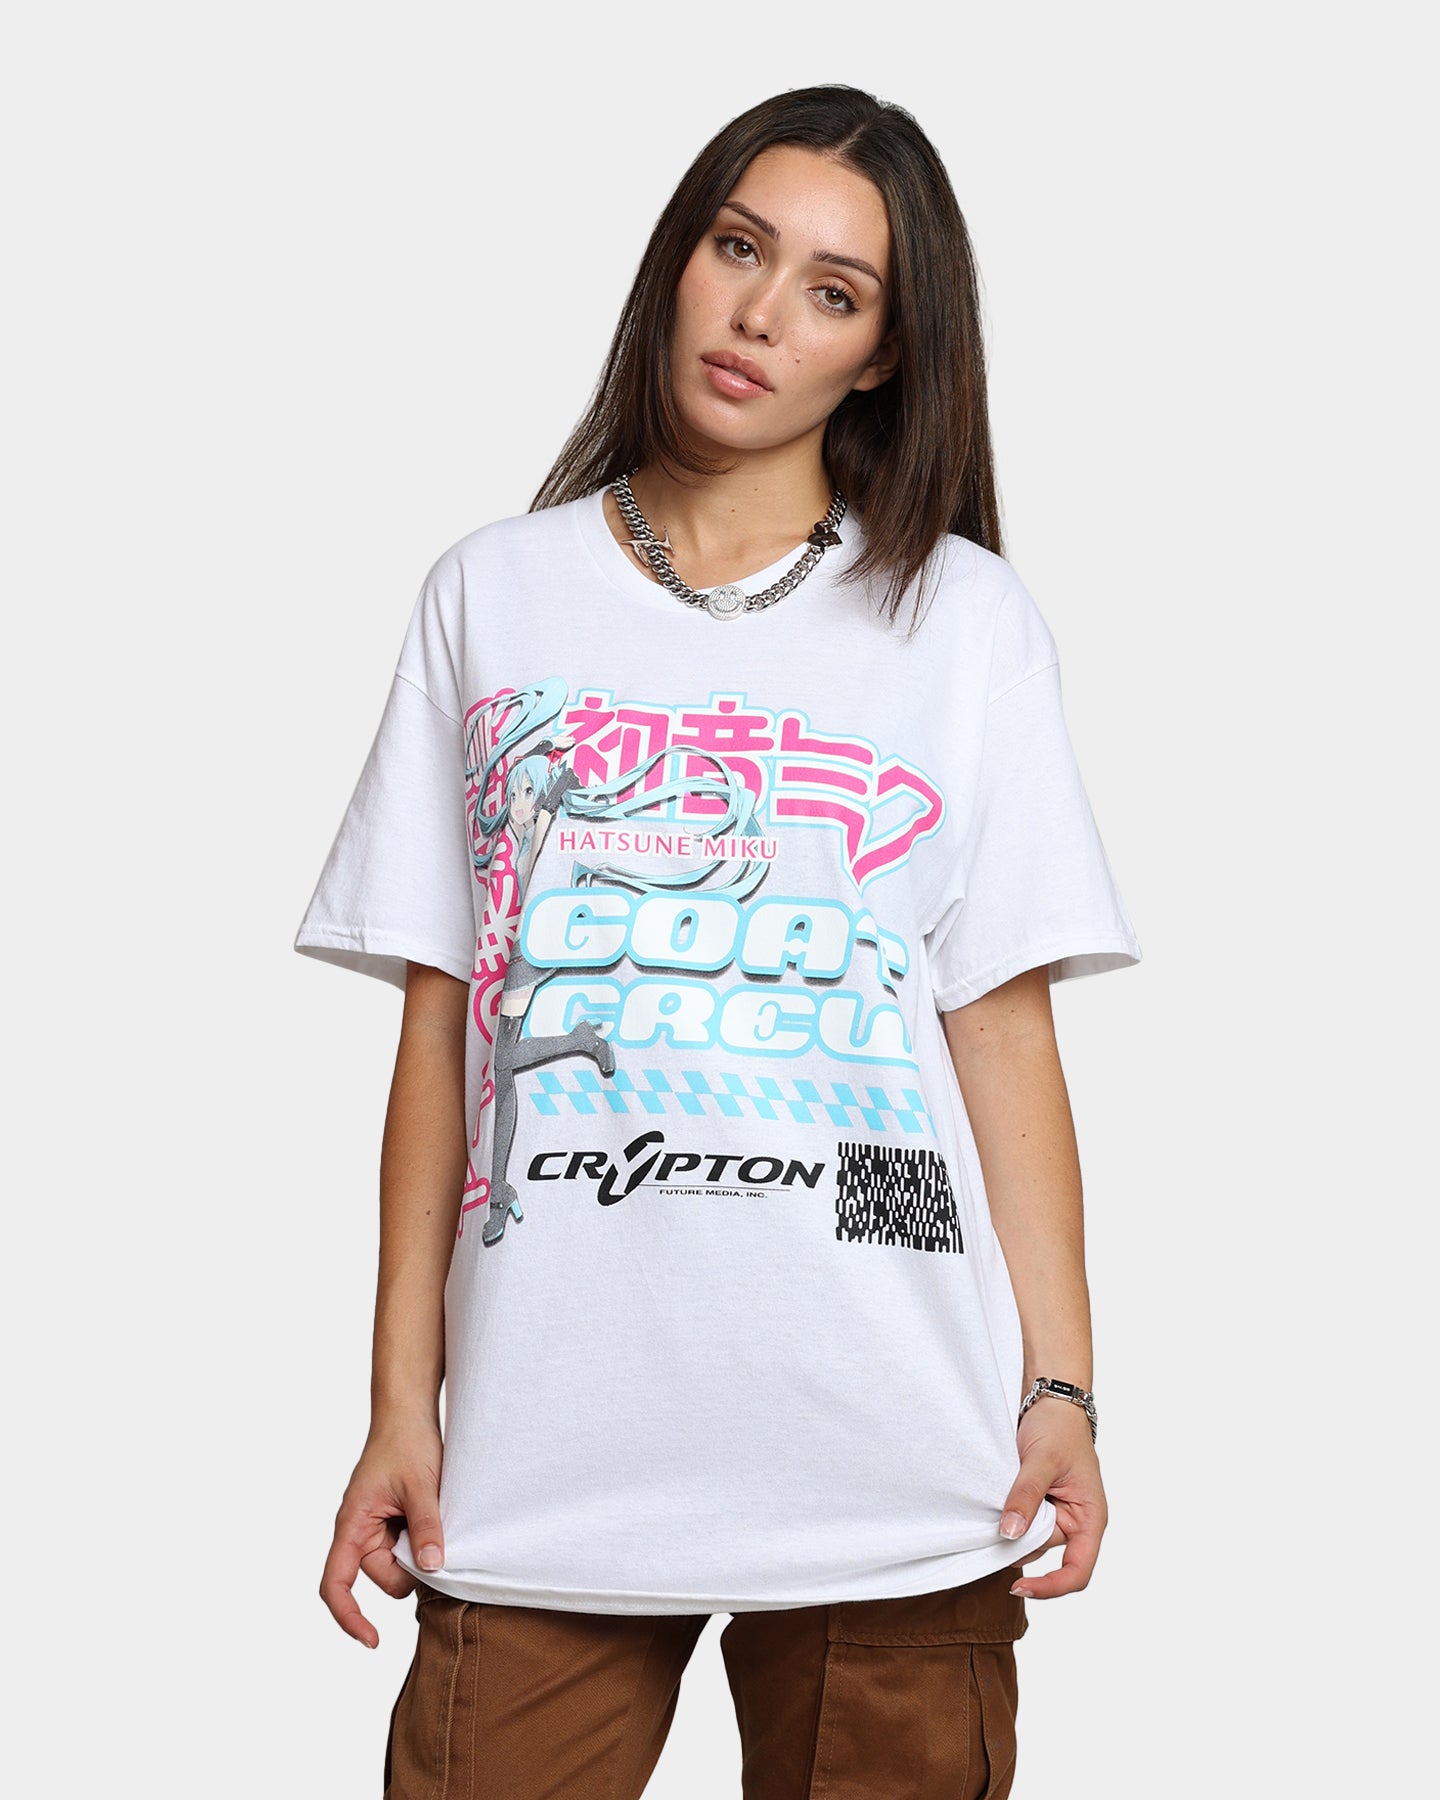 Goat Crew X Hatsune Miku Magazine T-Shirt White